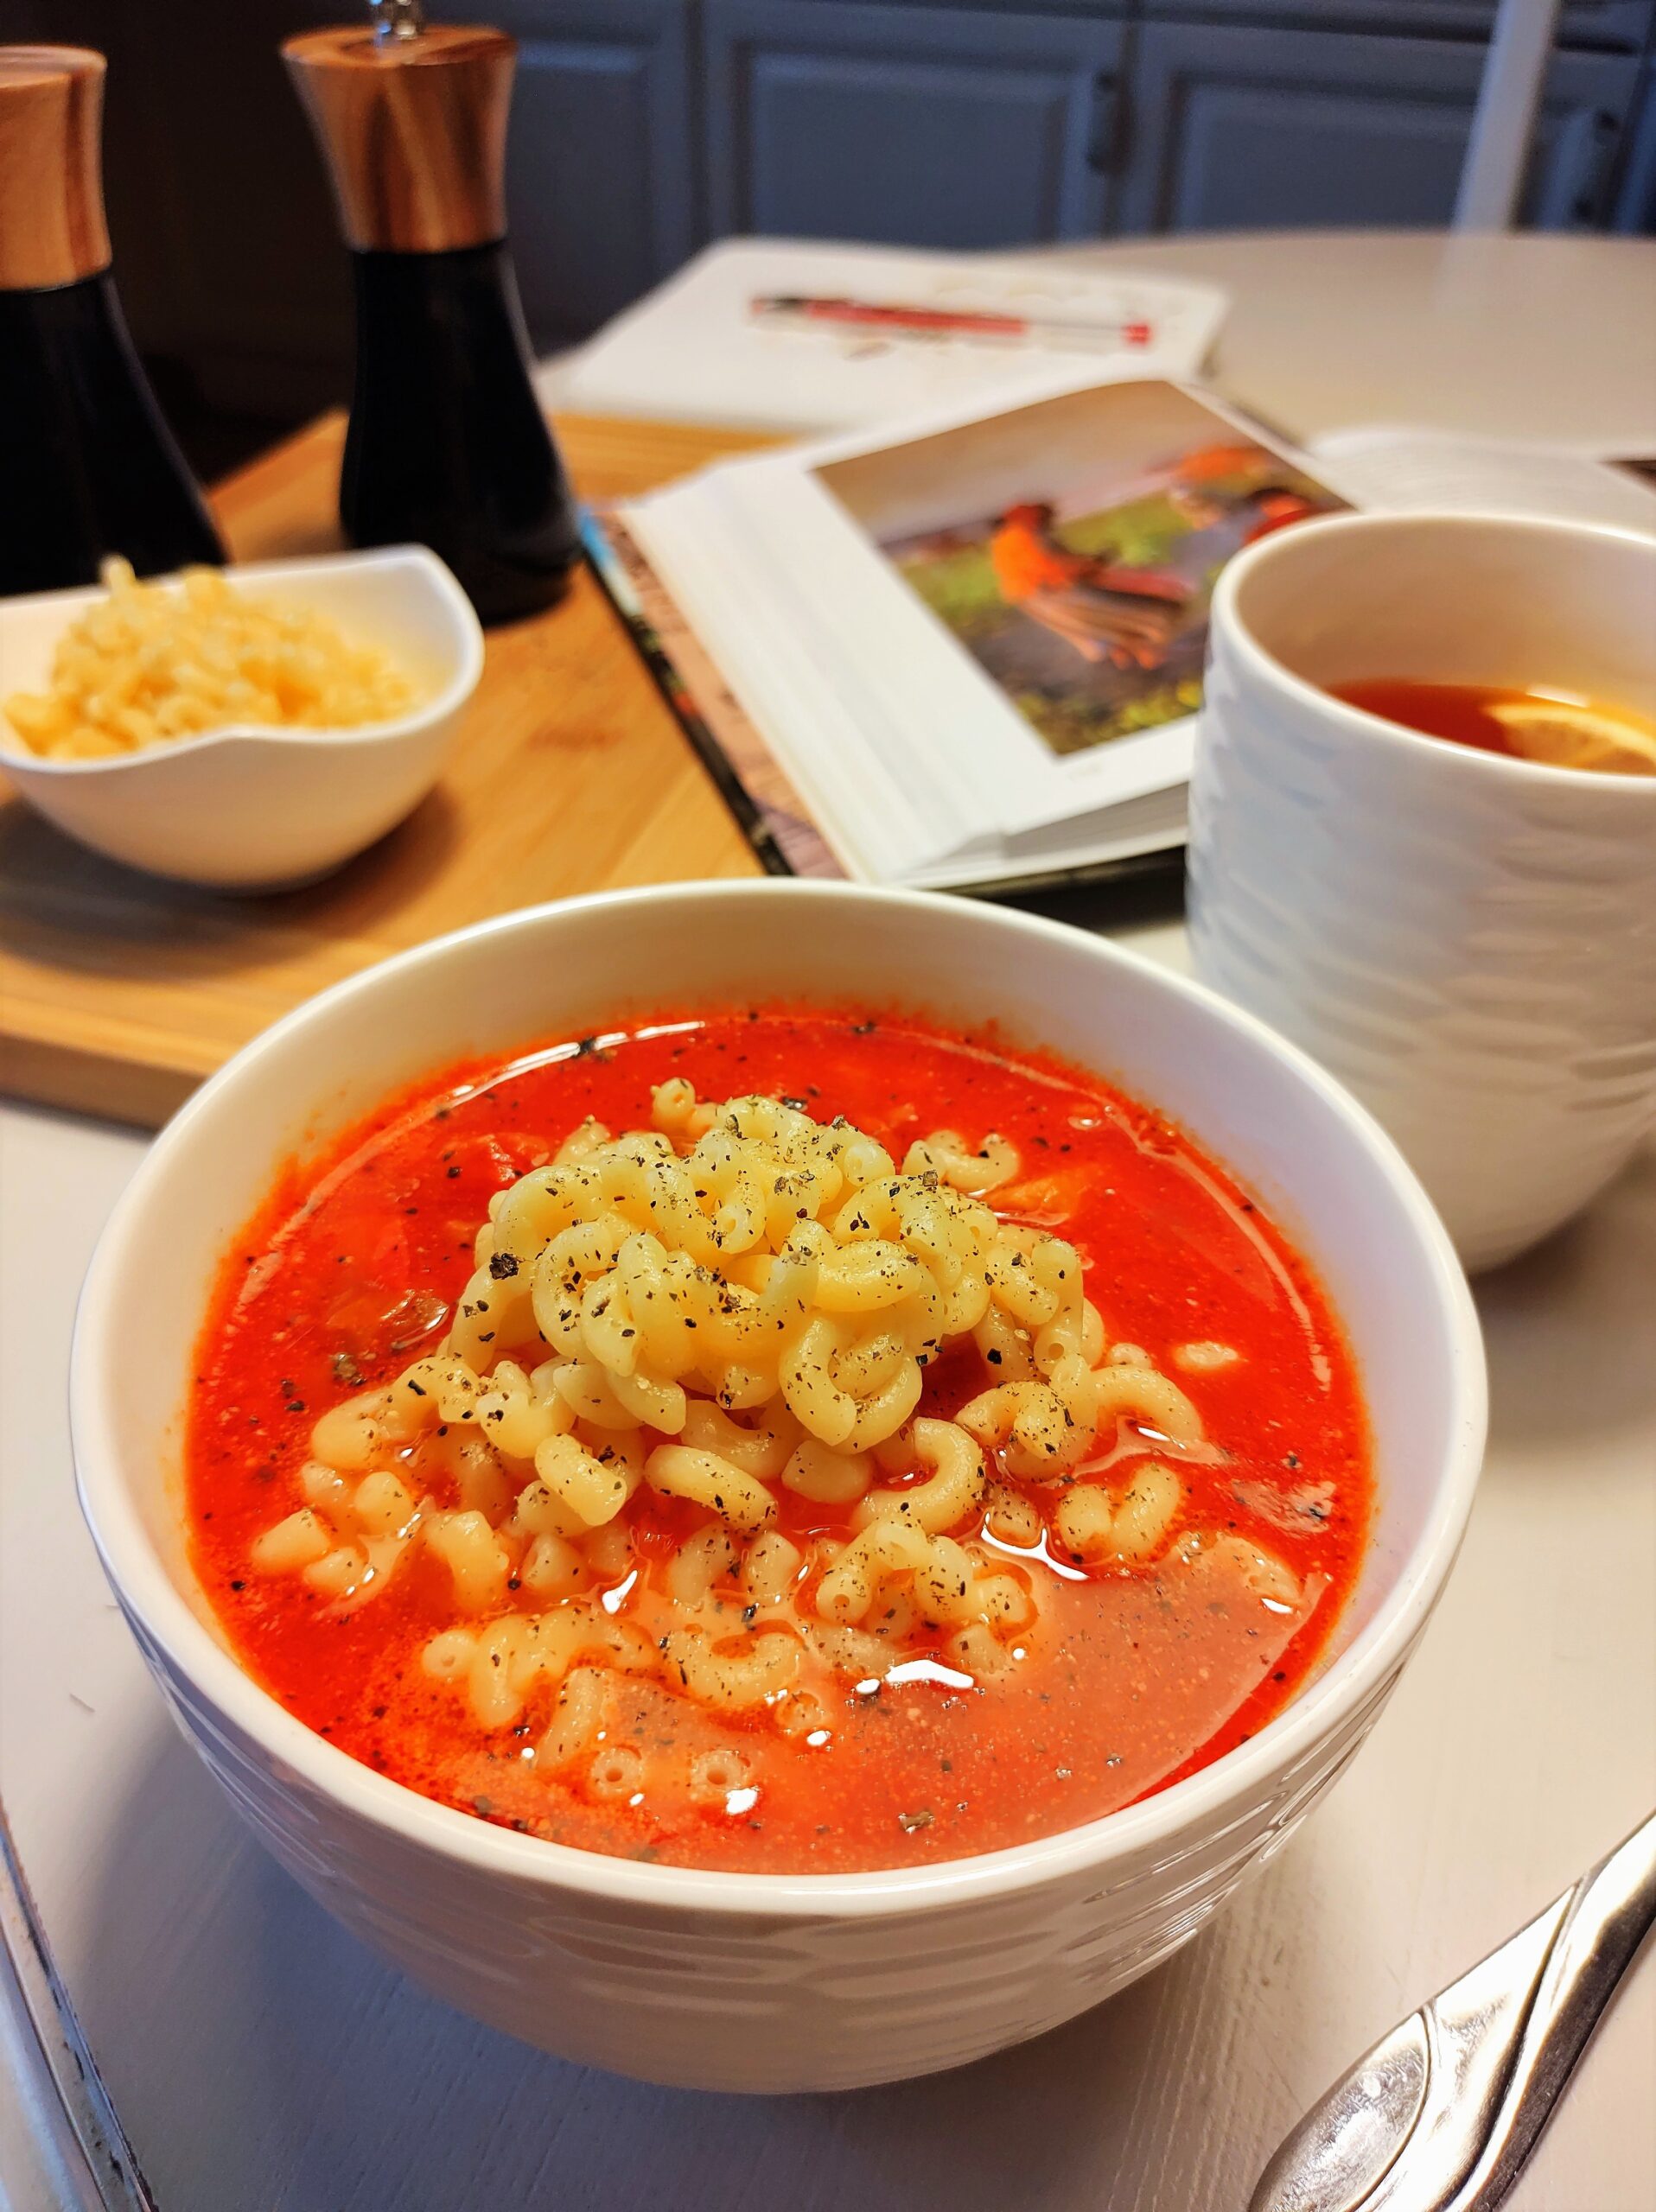 Na stole miseczka zupy pomidorowej, kubek z herbatą, akcesoria kuchenne i książka.